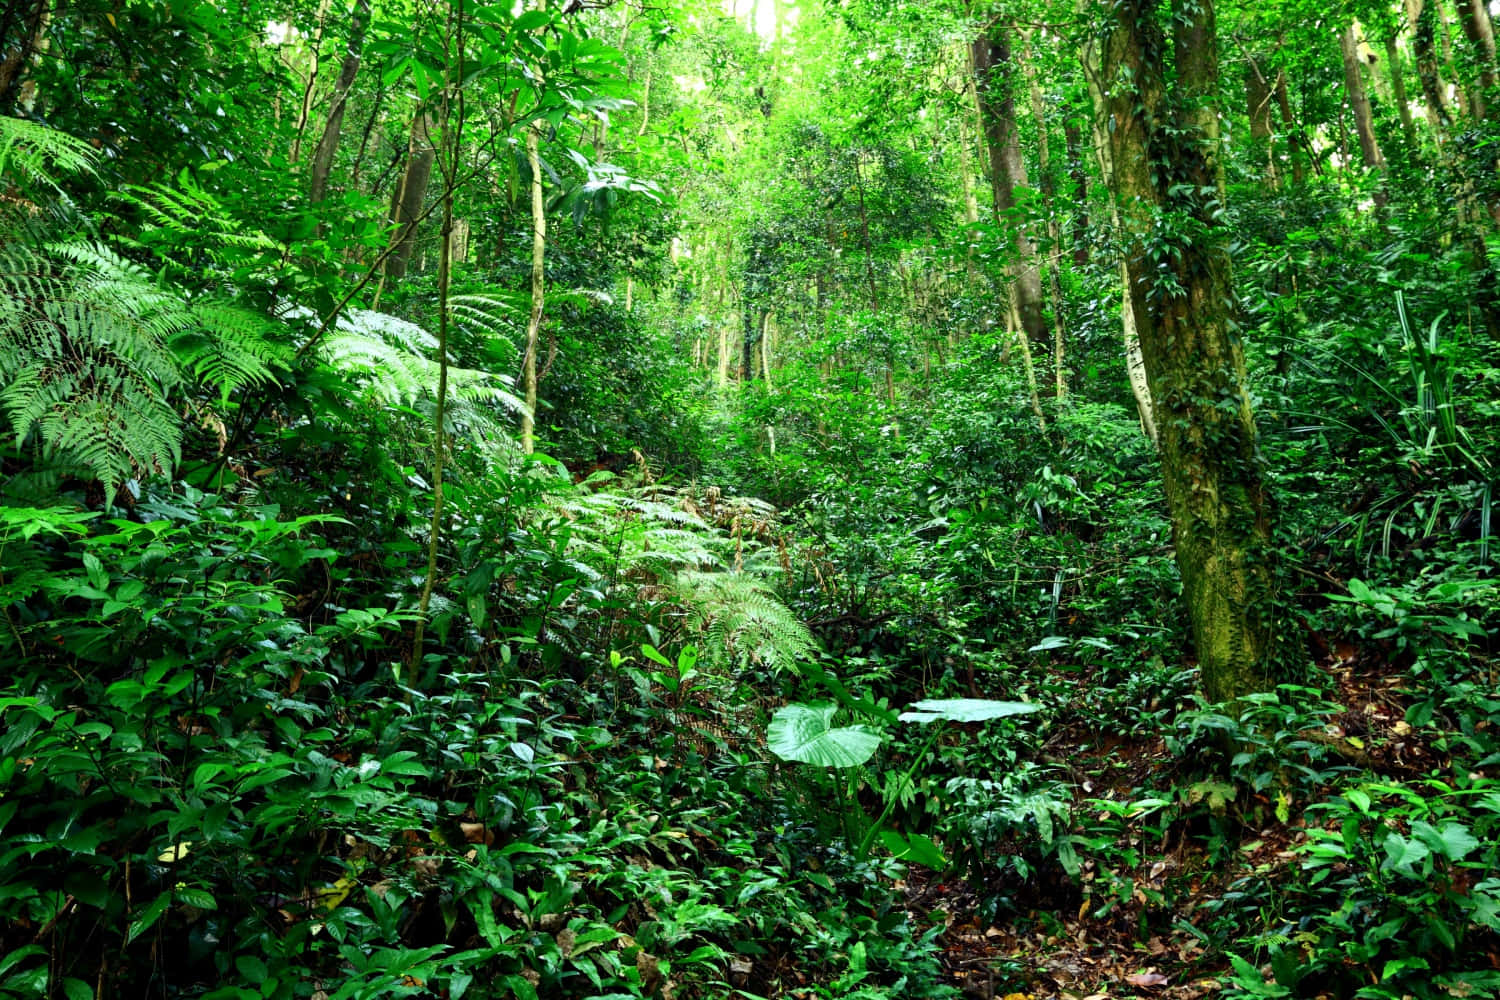 A lush, green jungle in Southeast Asia